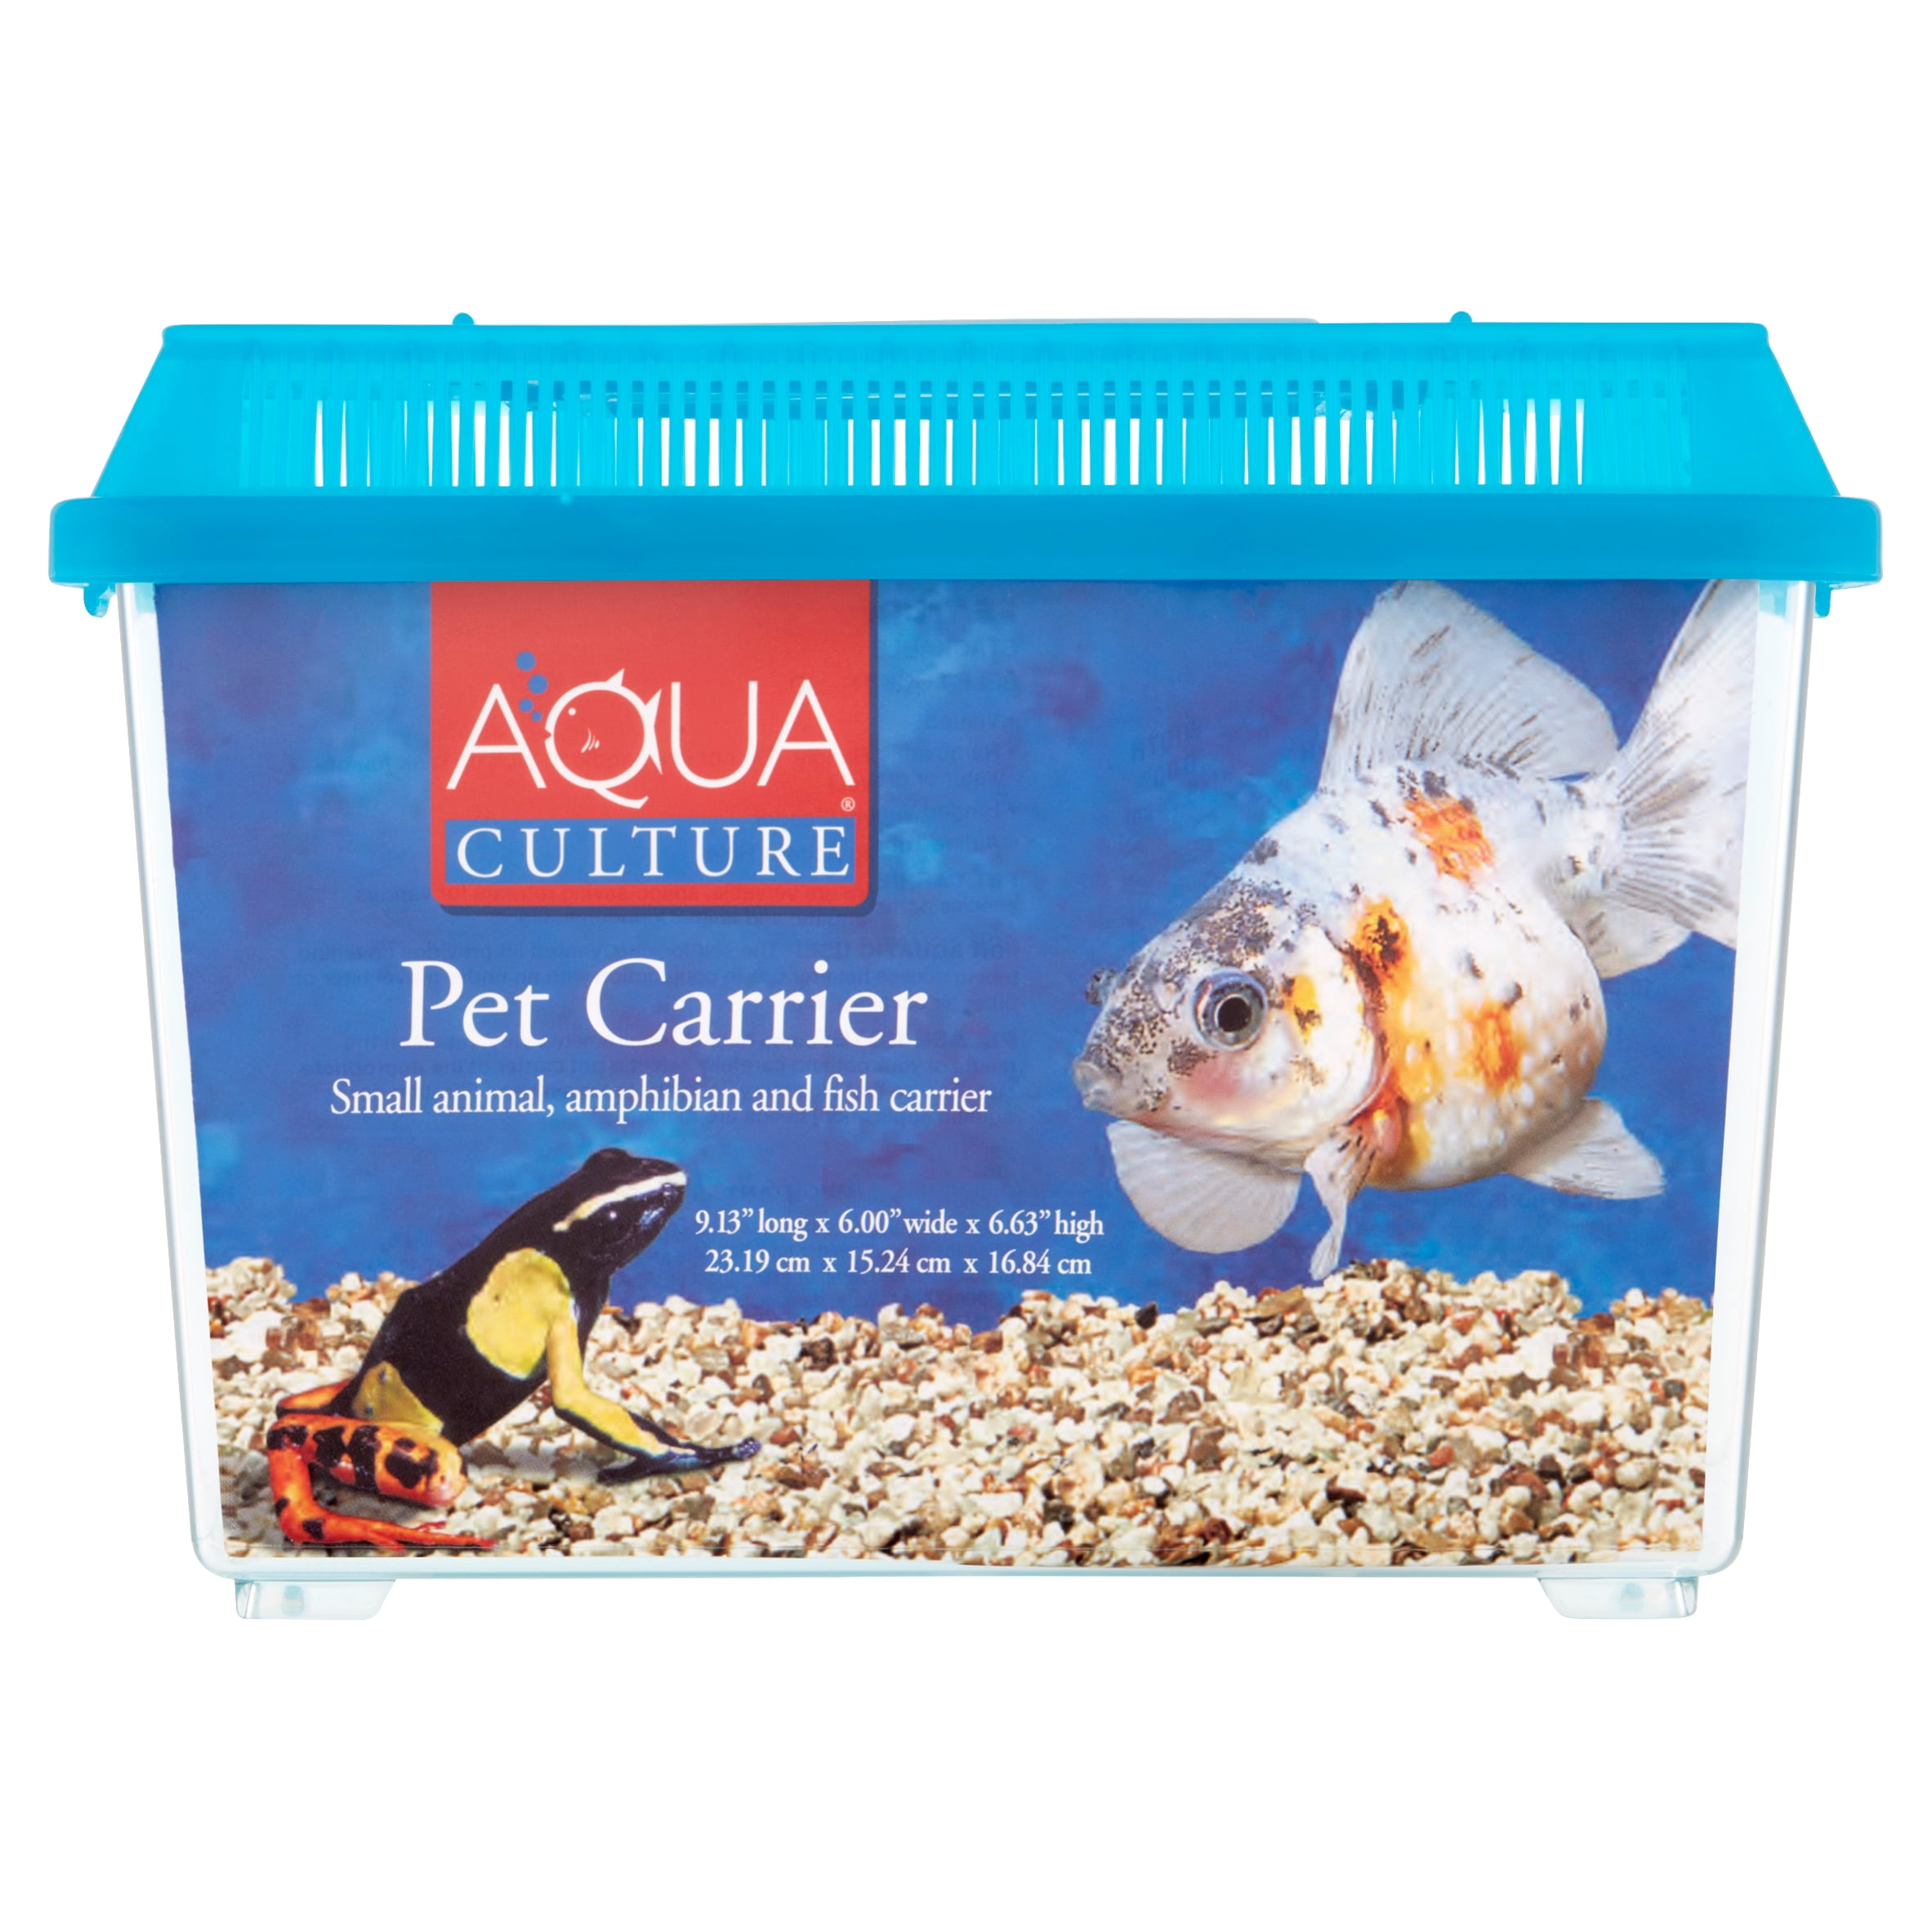 Aqua Culture Pet Carrier for Small Animals, amphibians & Fish